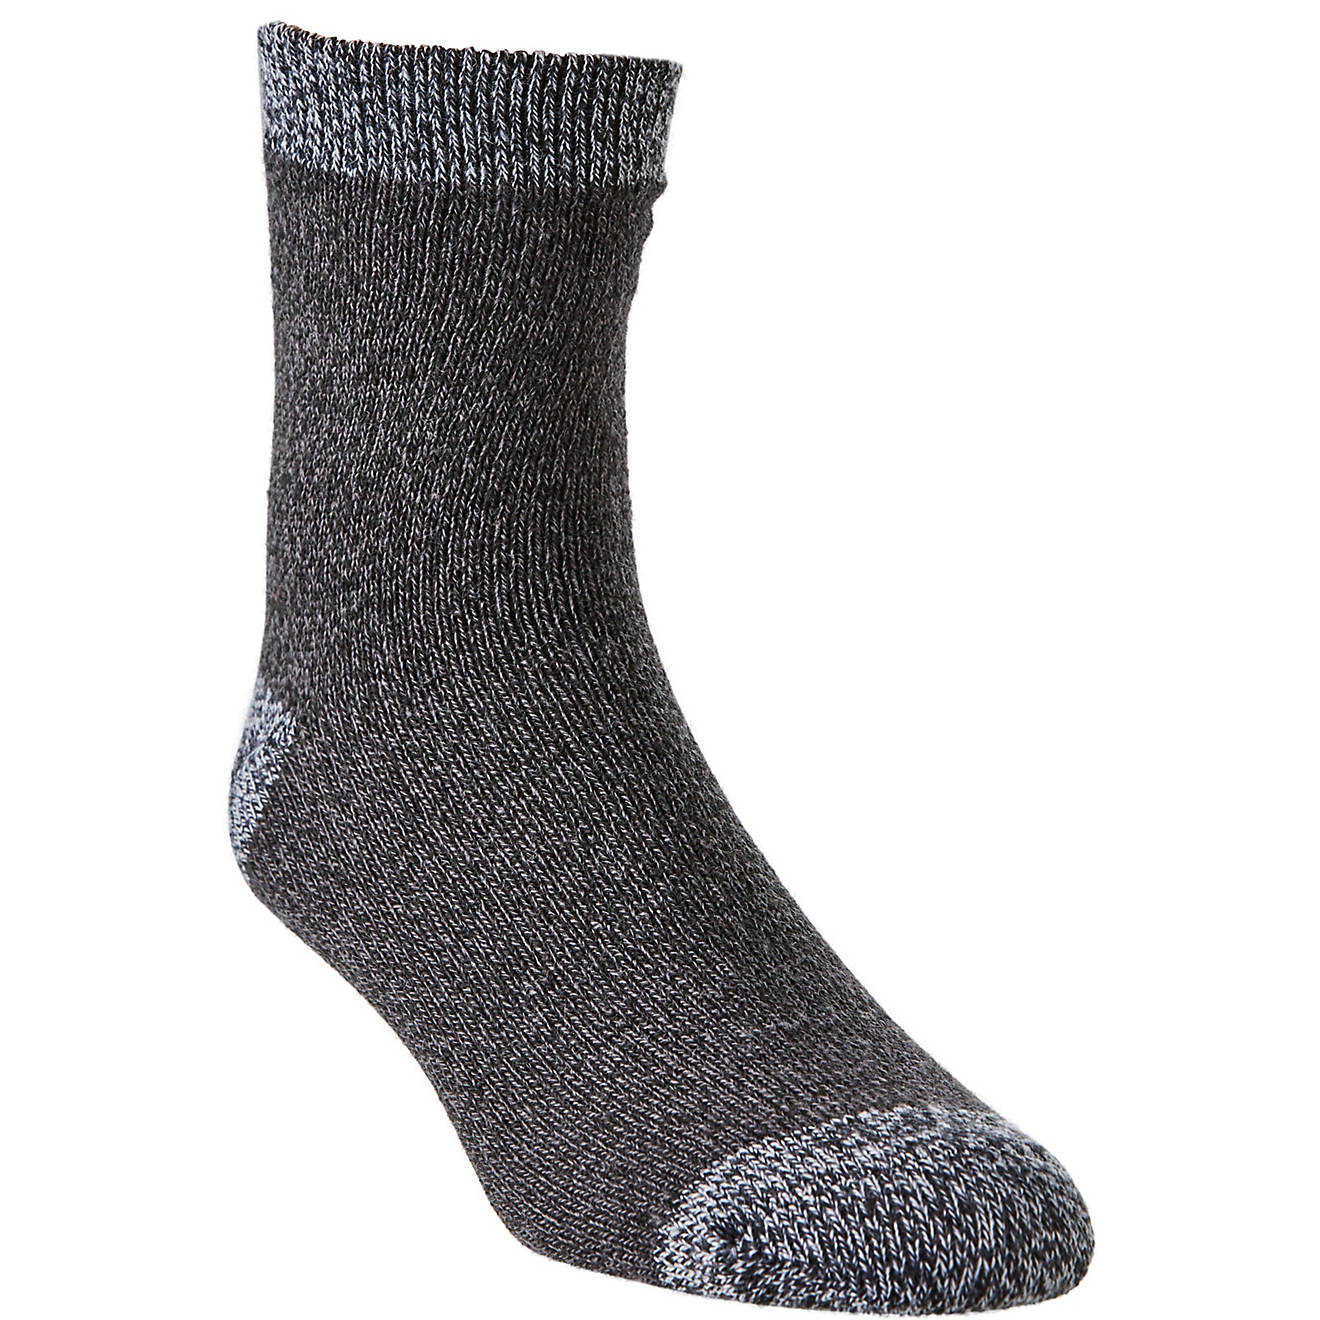 Magellan Outdoors Heel Toe Marl Contrast Lodge Socks                                                                             - view number 1